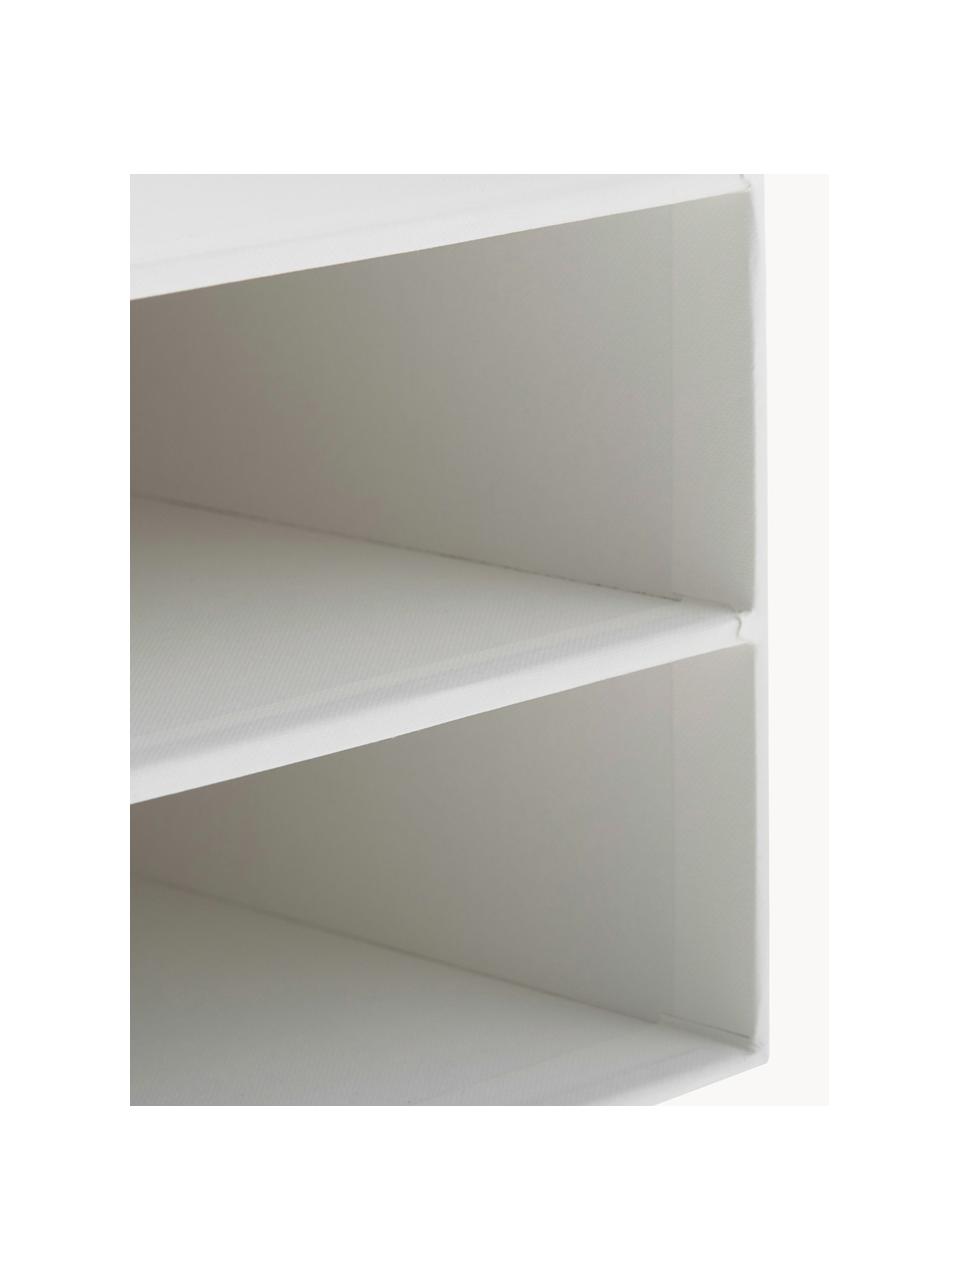 Modules de classement Trey, Carton laminé rigide, Blanc, larg. 23 x haut. 21 cm